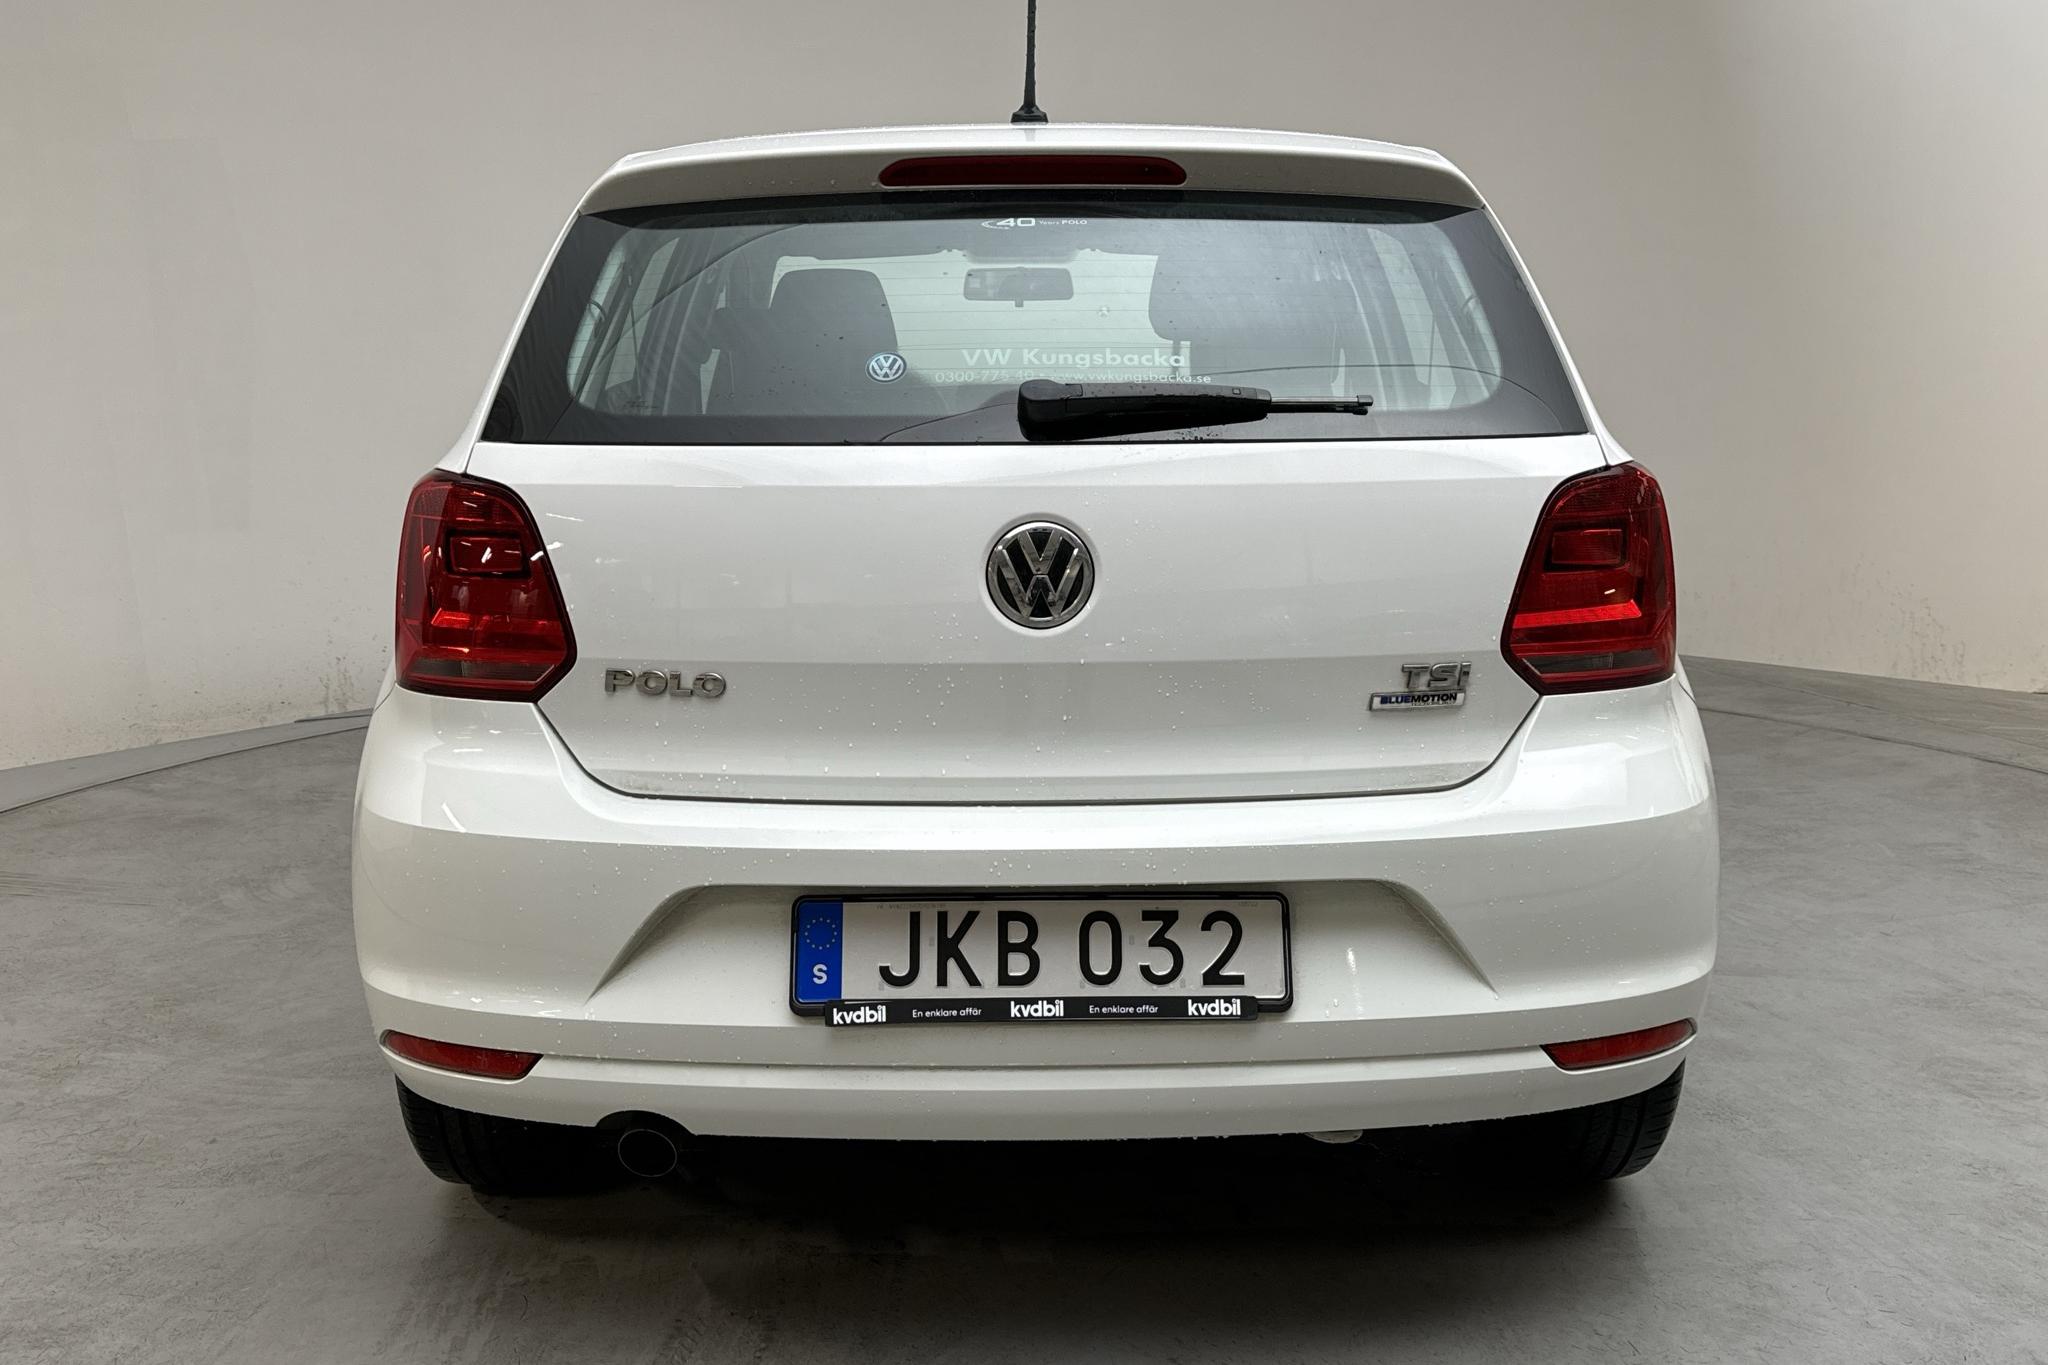 VW Polo 1.2 TSI 5dr (90hk) - 84 380 km - Manual - white - 2016